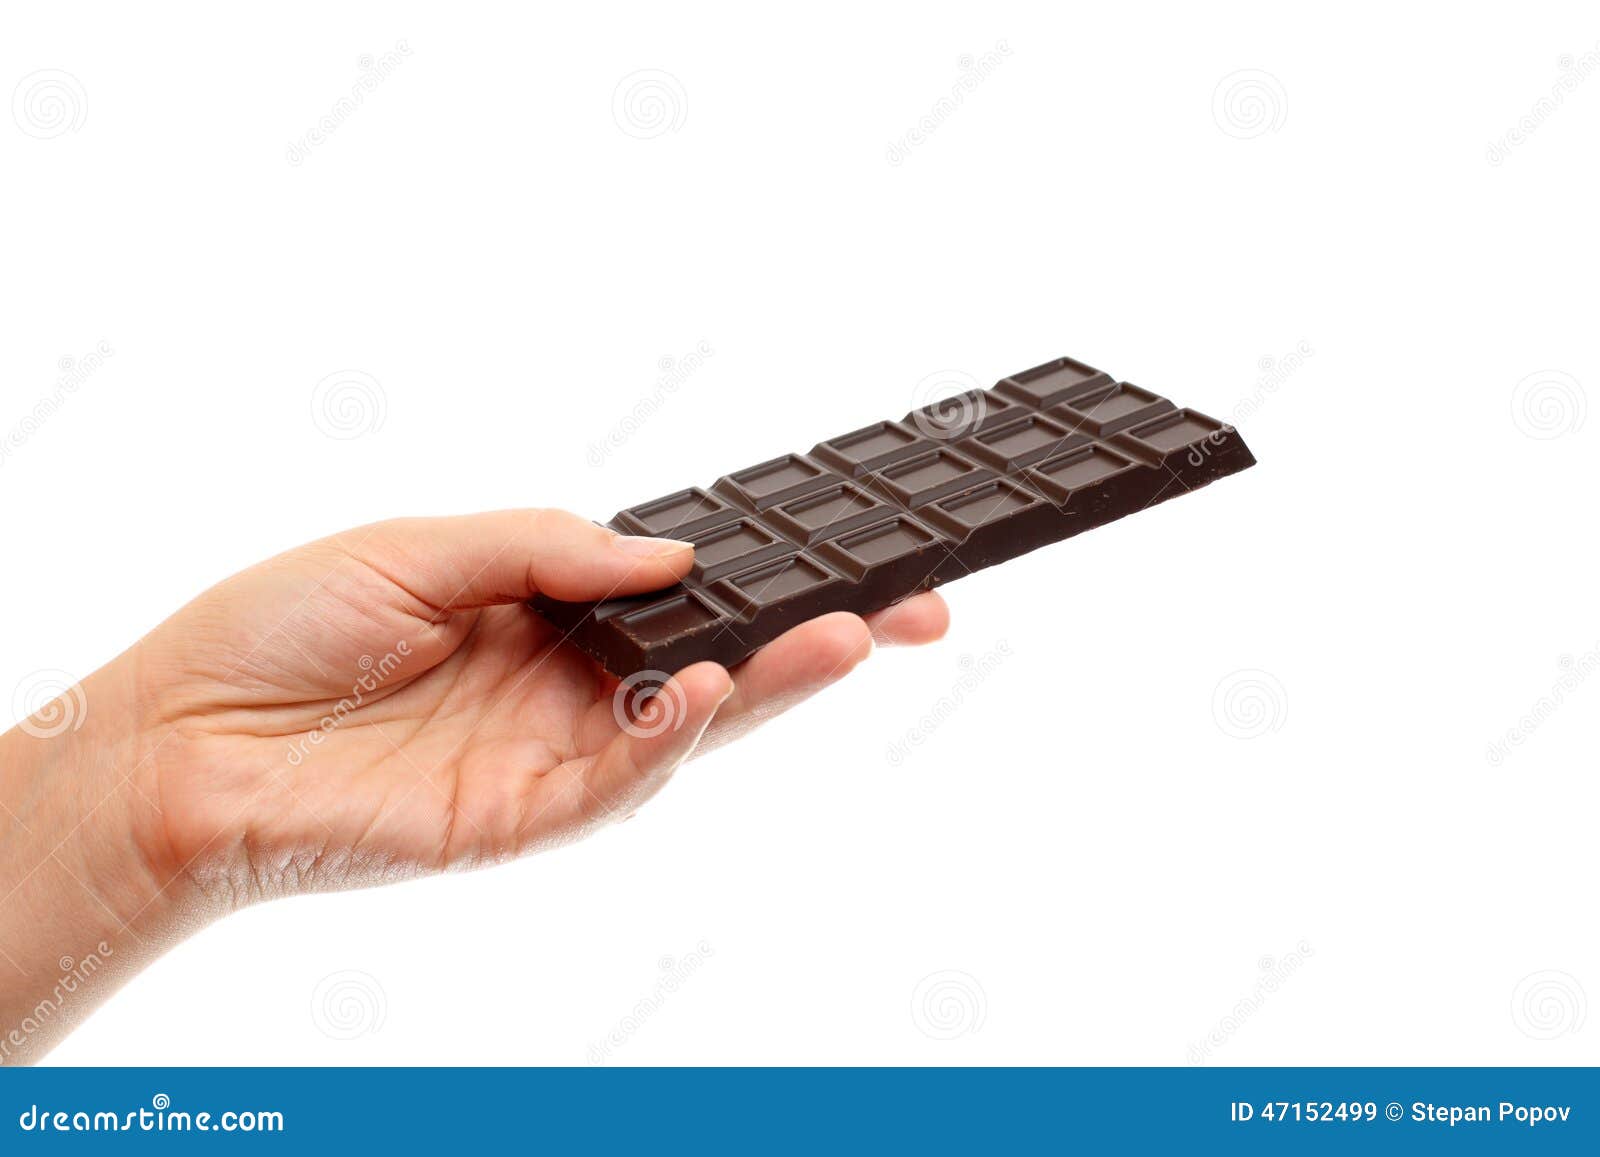 Дядя тянет руку в руке шоколадка. Шоколадка в руке. Кусочек шоколада в руке. Плитка шиколада в руках. Плитка шоколада в руке.